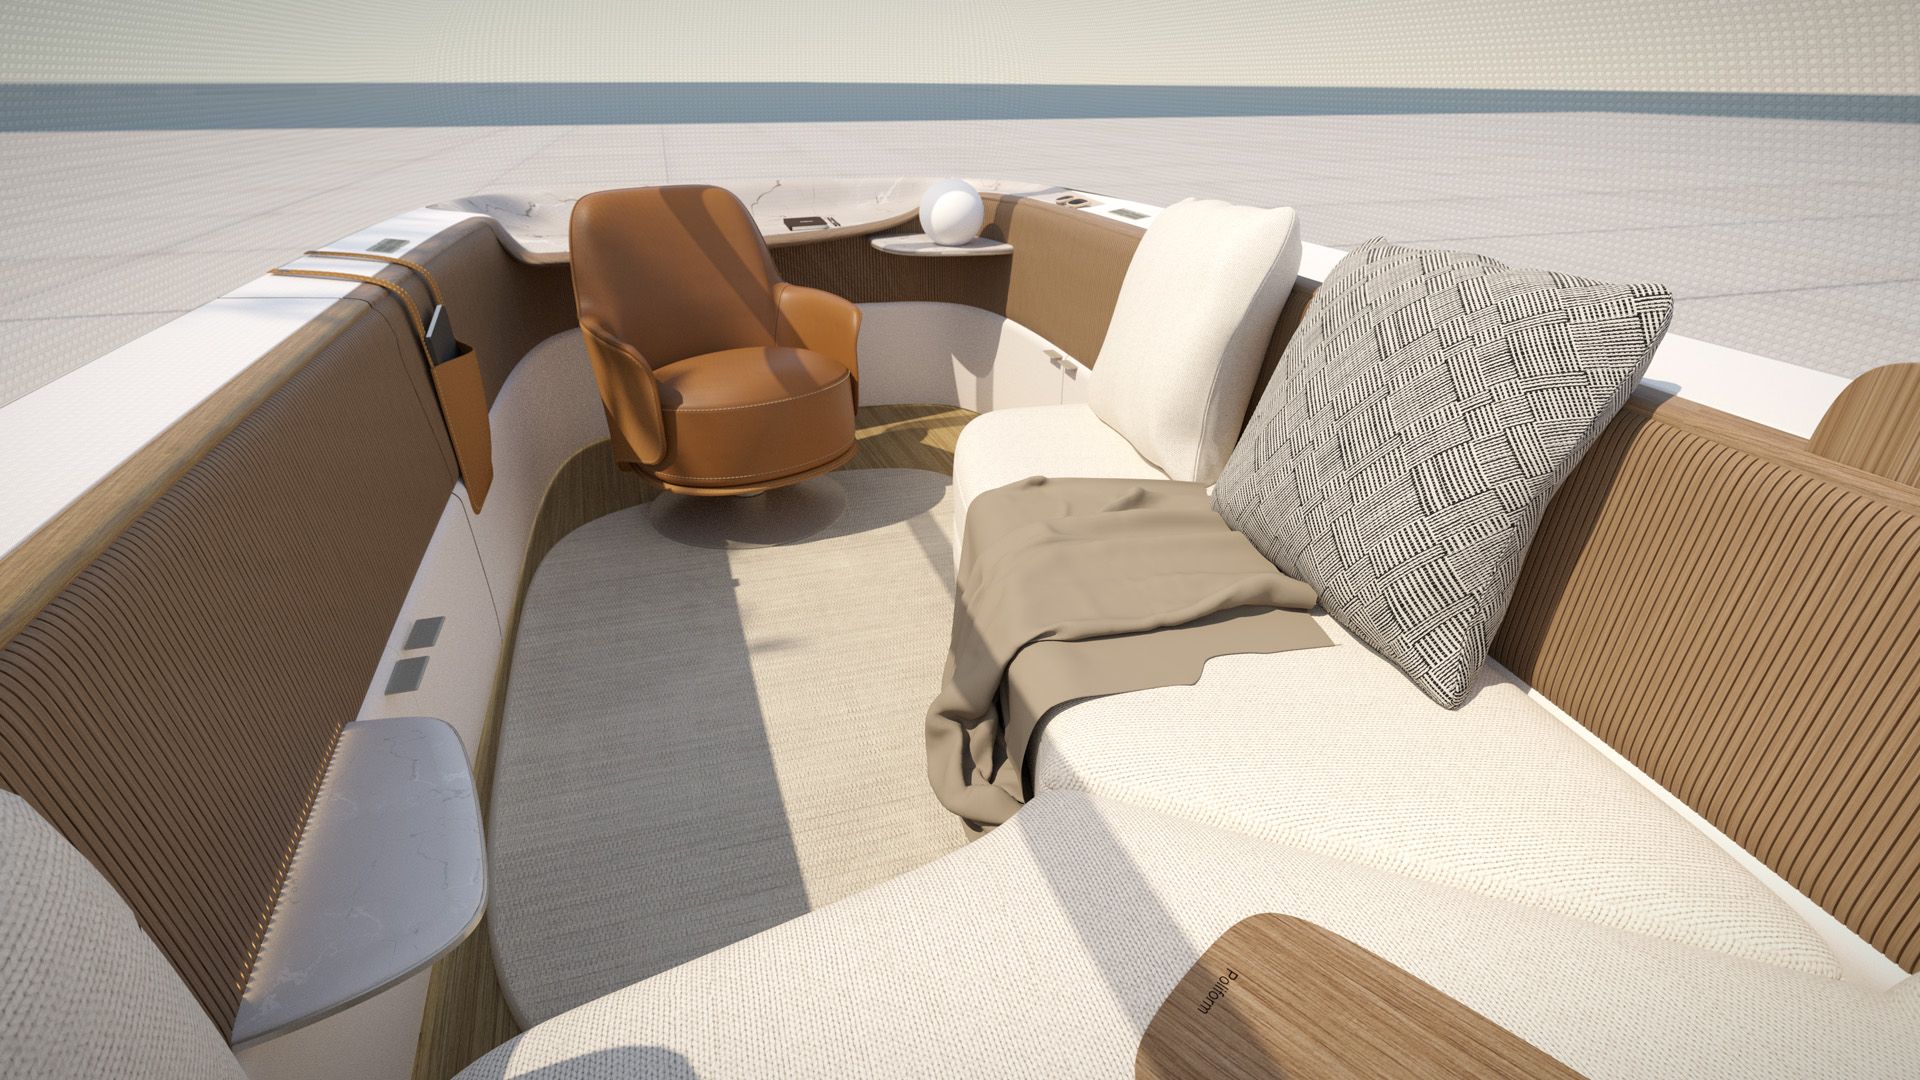 Der Interieur-Entwurf von Poliform für den Audi urbansphere concept zeigt einen gemütlichen Innenraum mit vielen Kissen und einem Sessel.